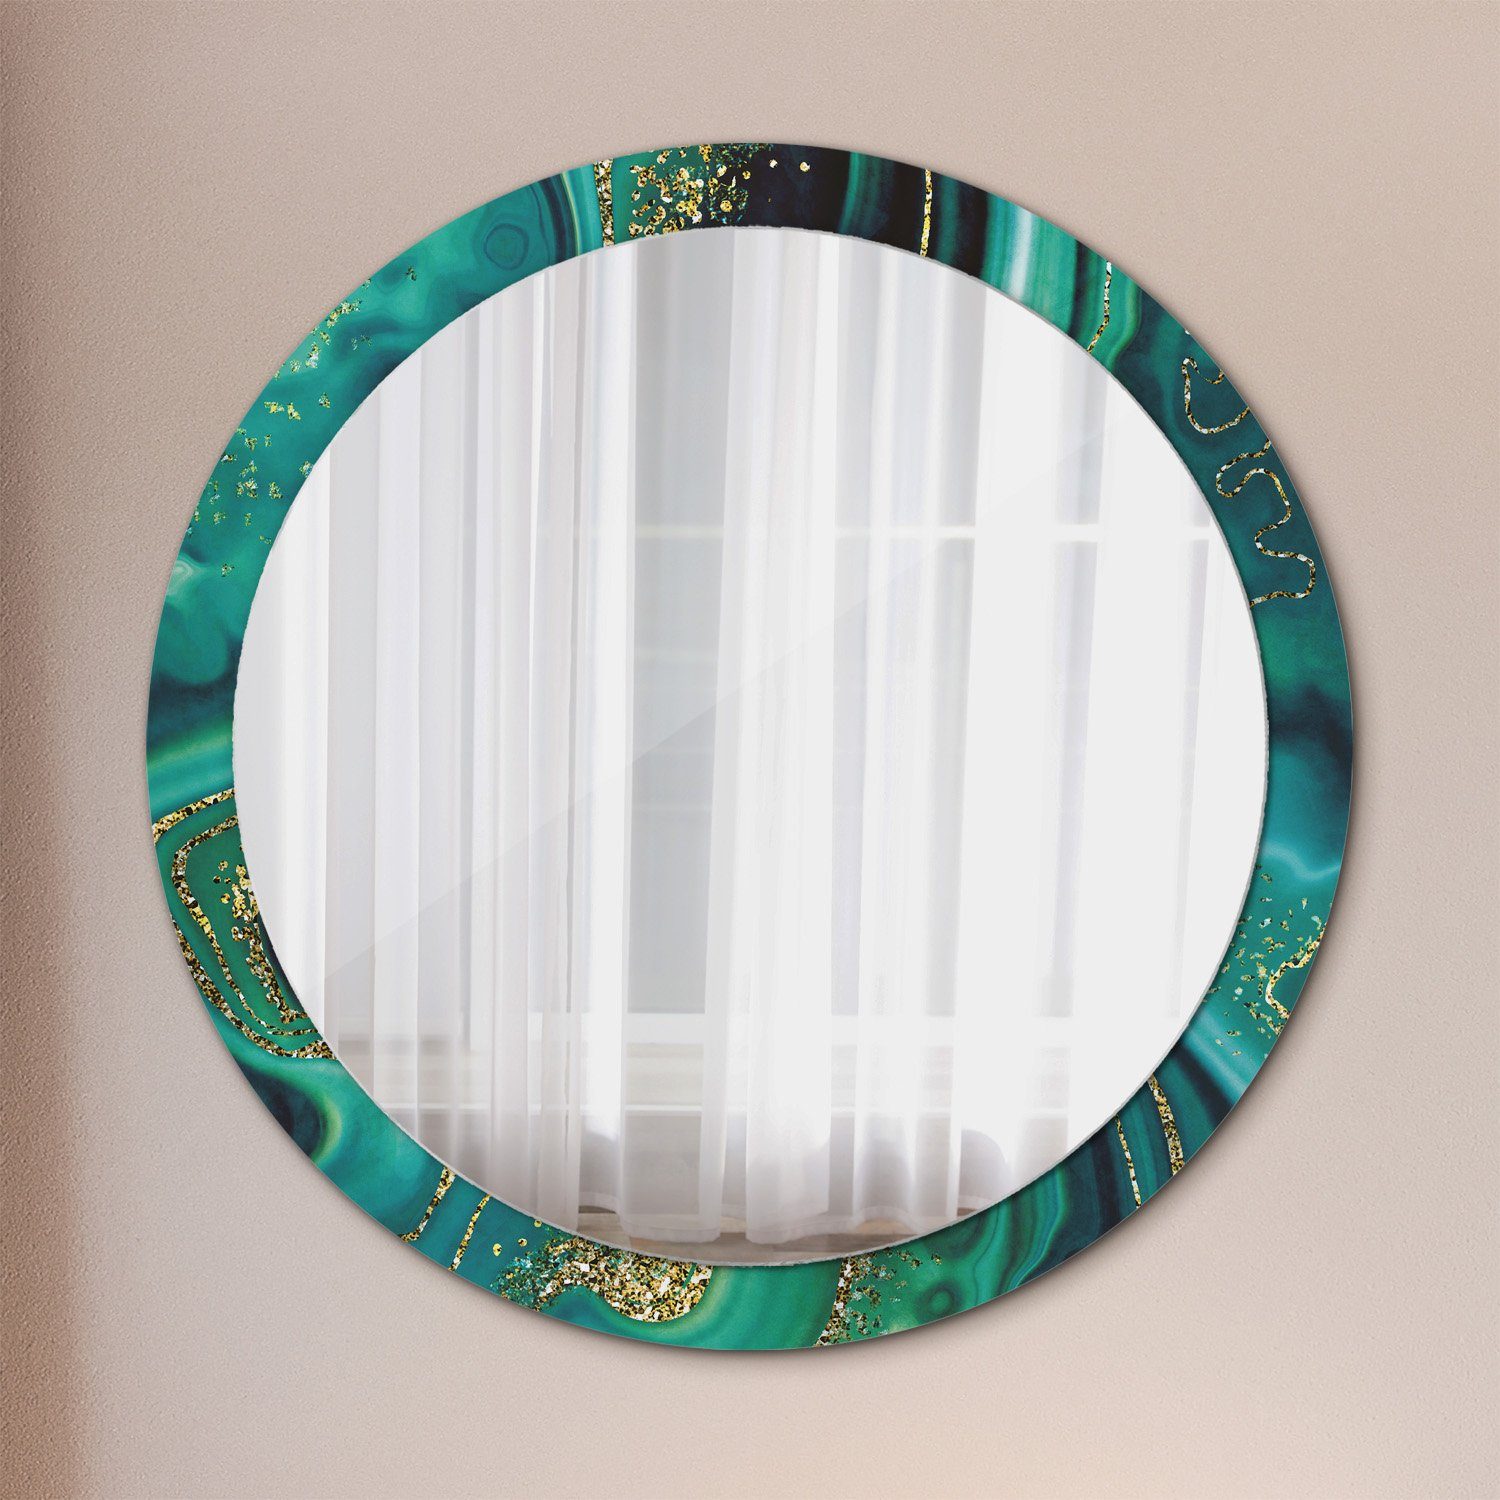 Tulup Wandspiegel Runder Deko Spiegel mit Modernem Aufdruck Rundspiegel Rund: Ø100cm, Runder Spiegel mit Modernem Aufdruck Smaragd Grün | Wandspiegel